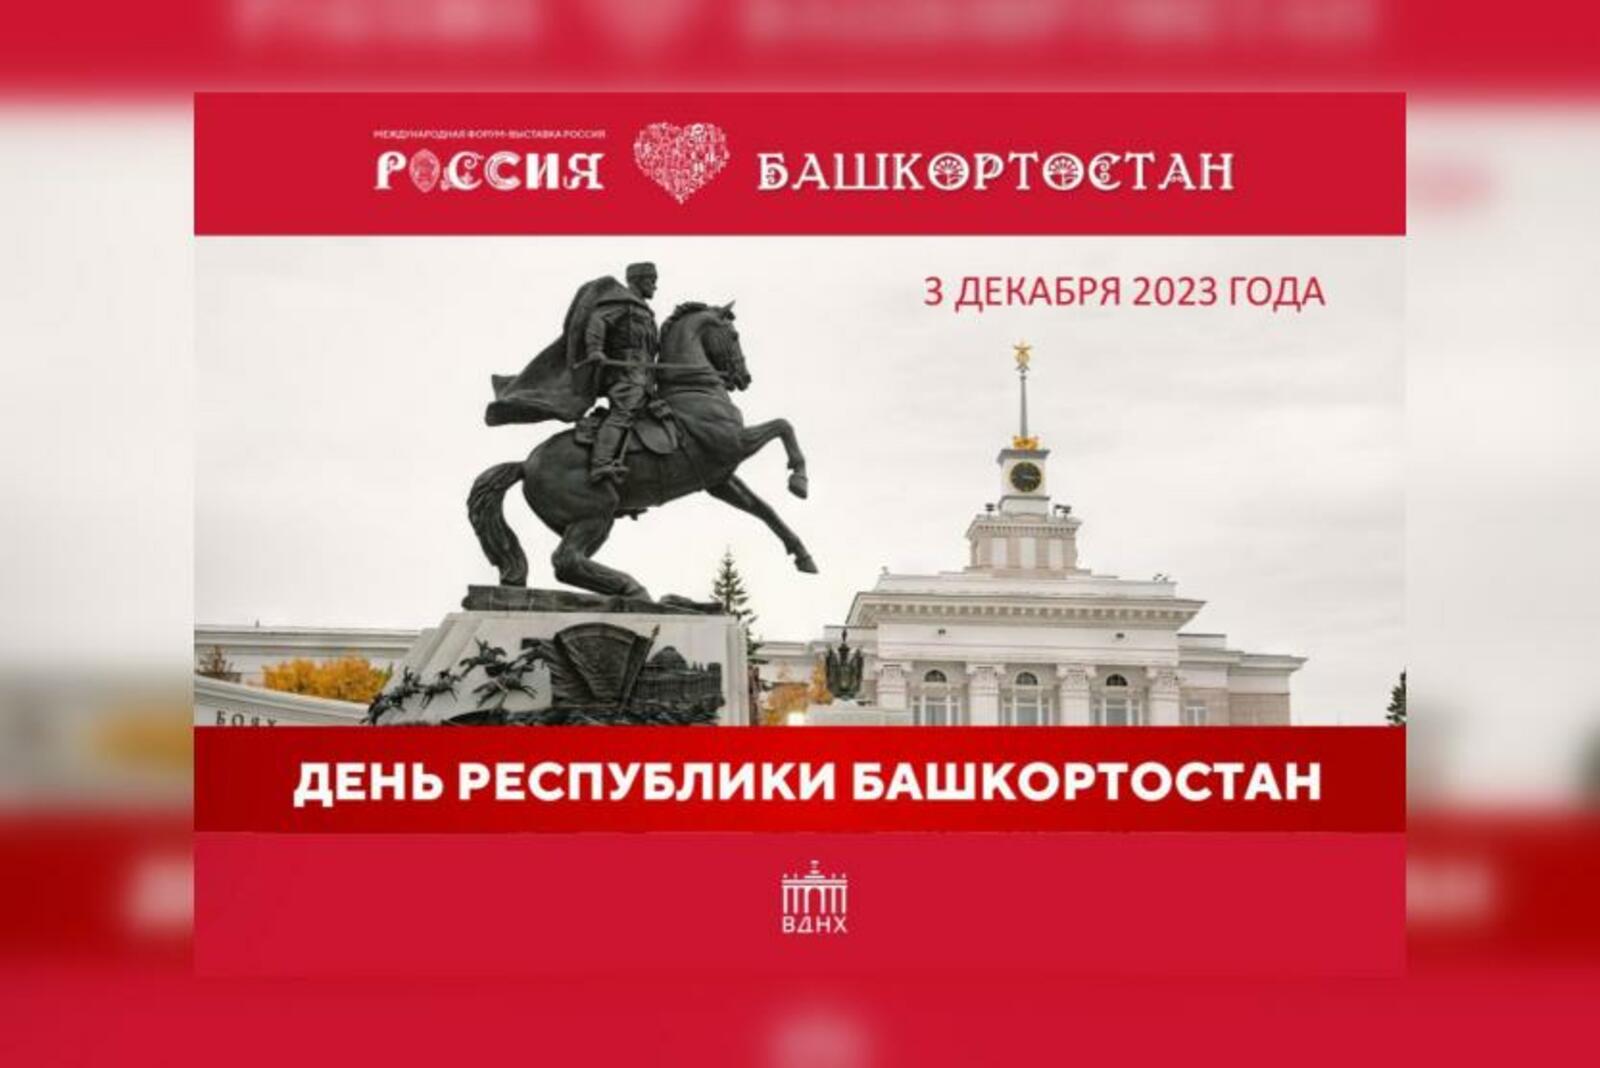 Завтра на международной выставке «Россия» в Москве пройдёт День Республики Башкортостан